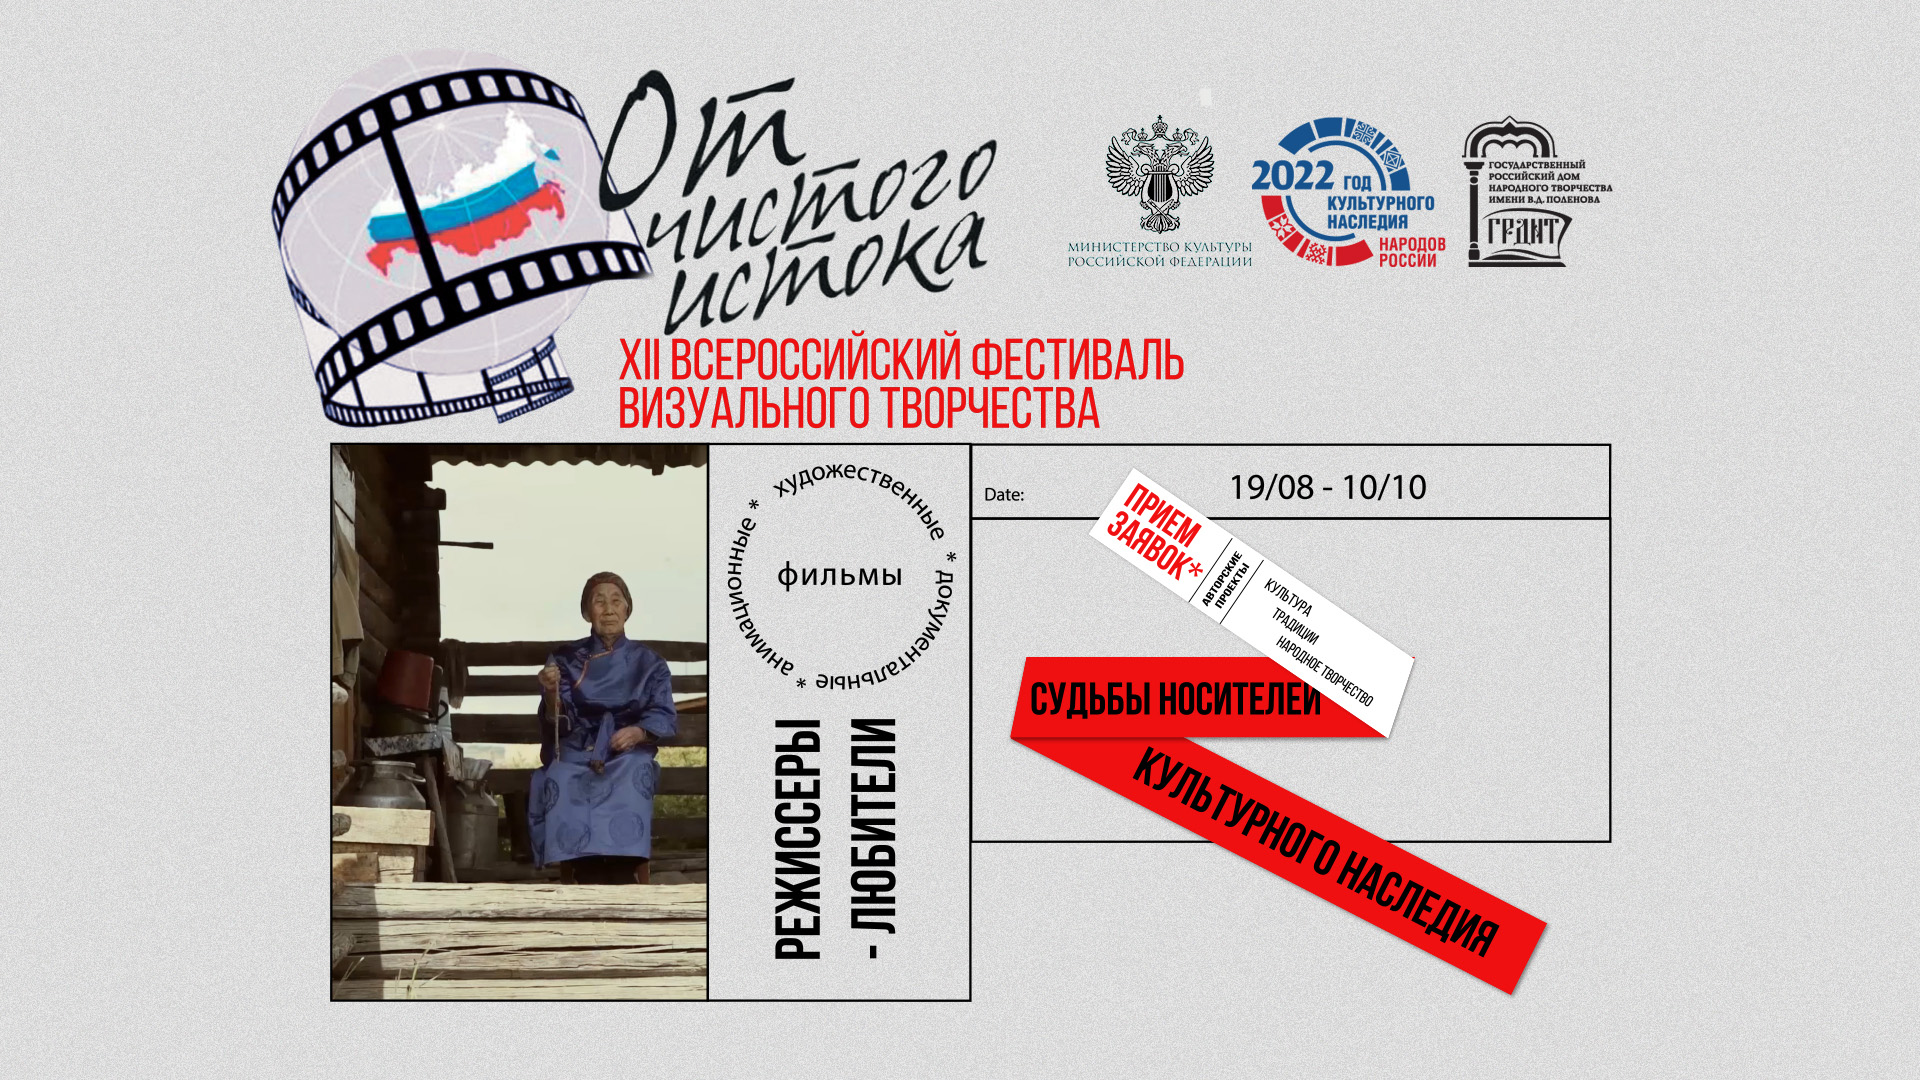 XII Всероссийский фестиваль видеофильмов о народном творчестве, традиционной культуре и этнографии «От чистого истока»